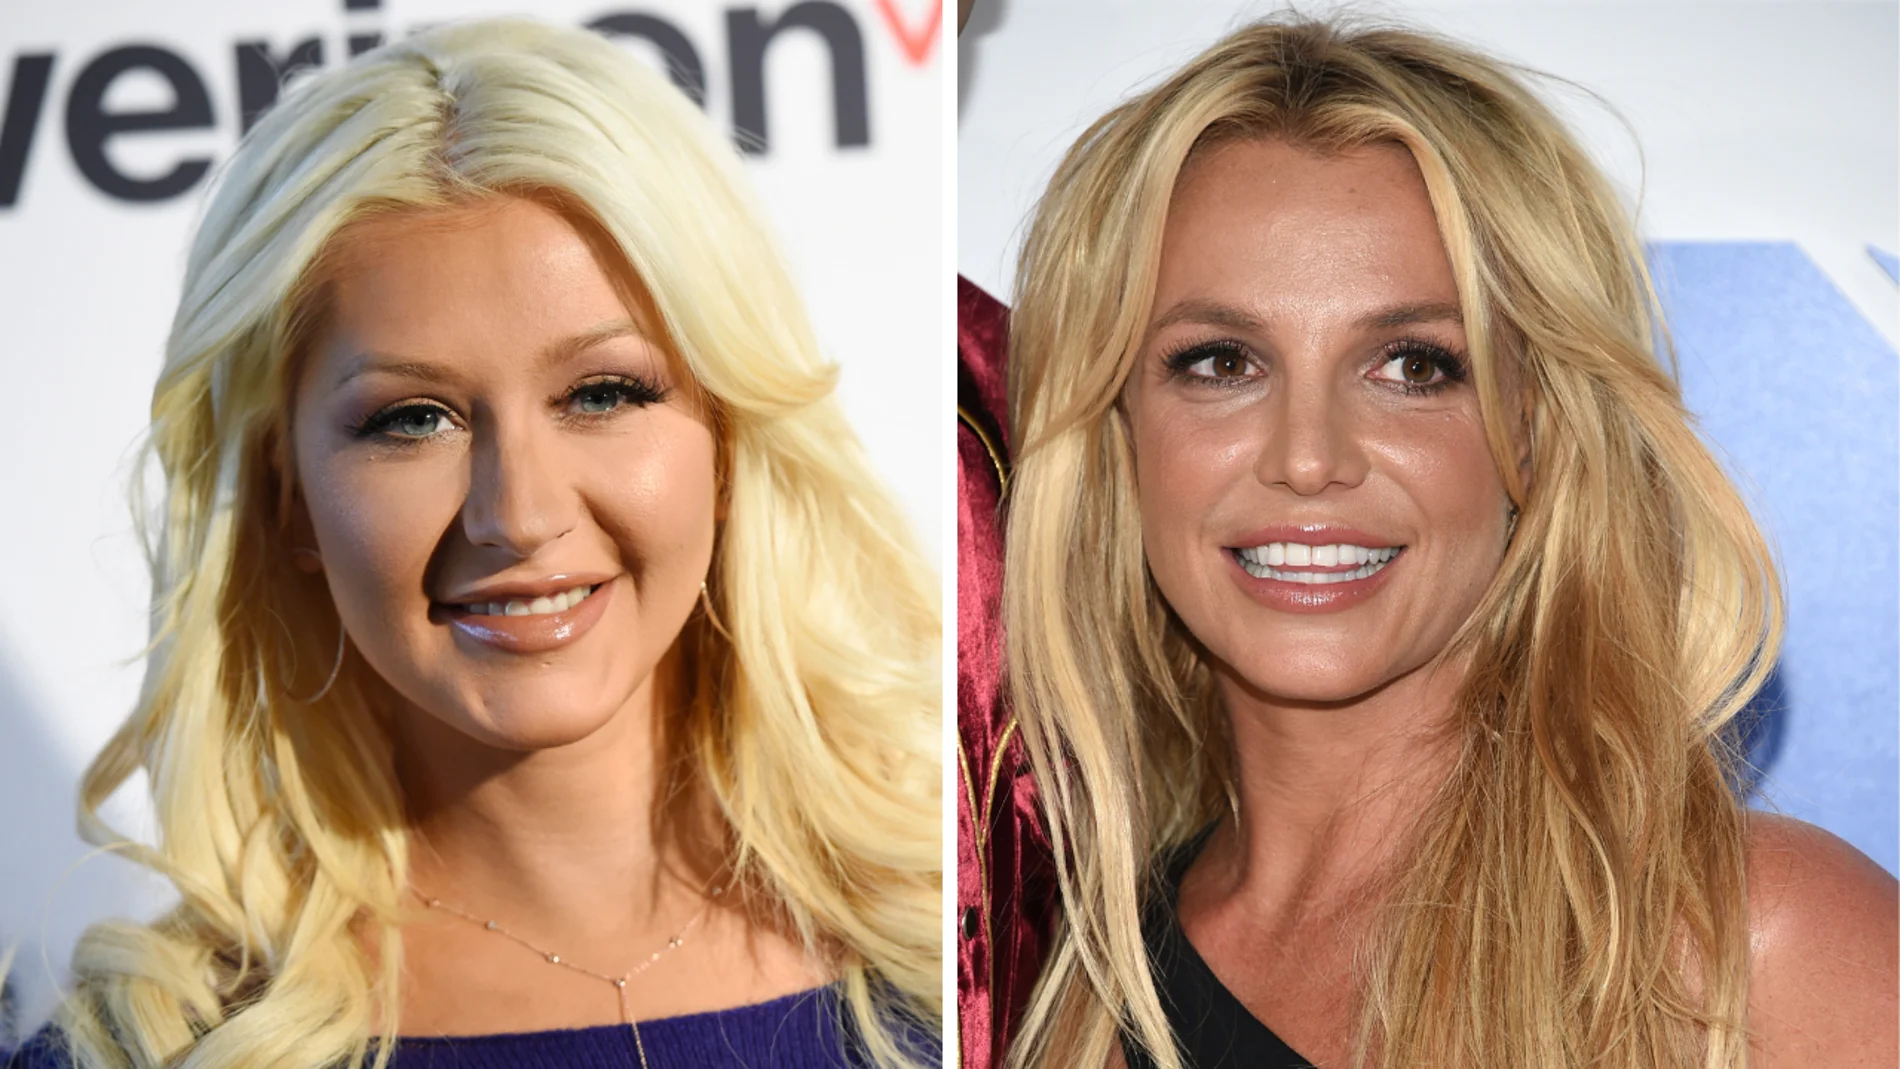 Britney Spears responde a las críticas y asegura que no ha criticado a Christina Aguilera